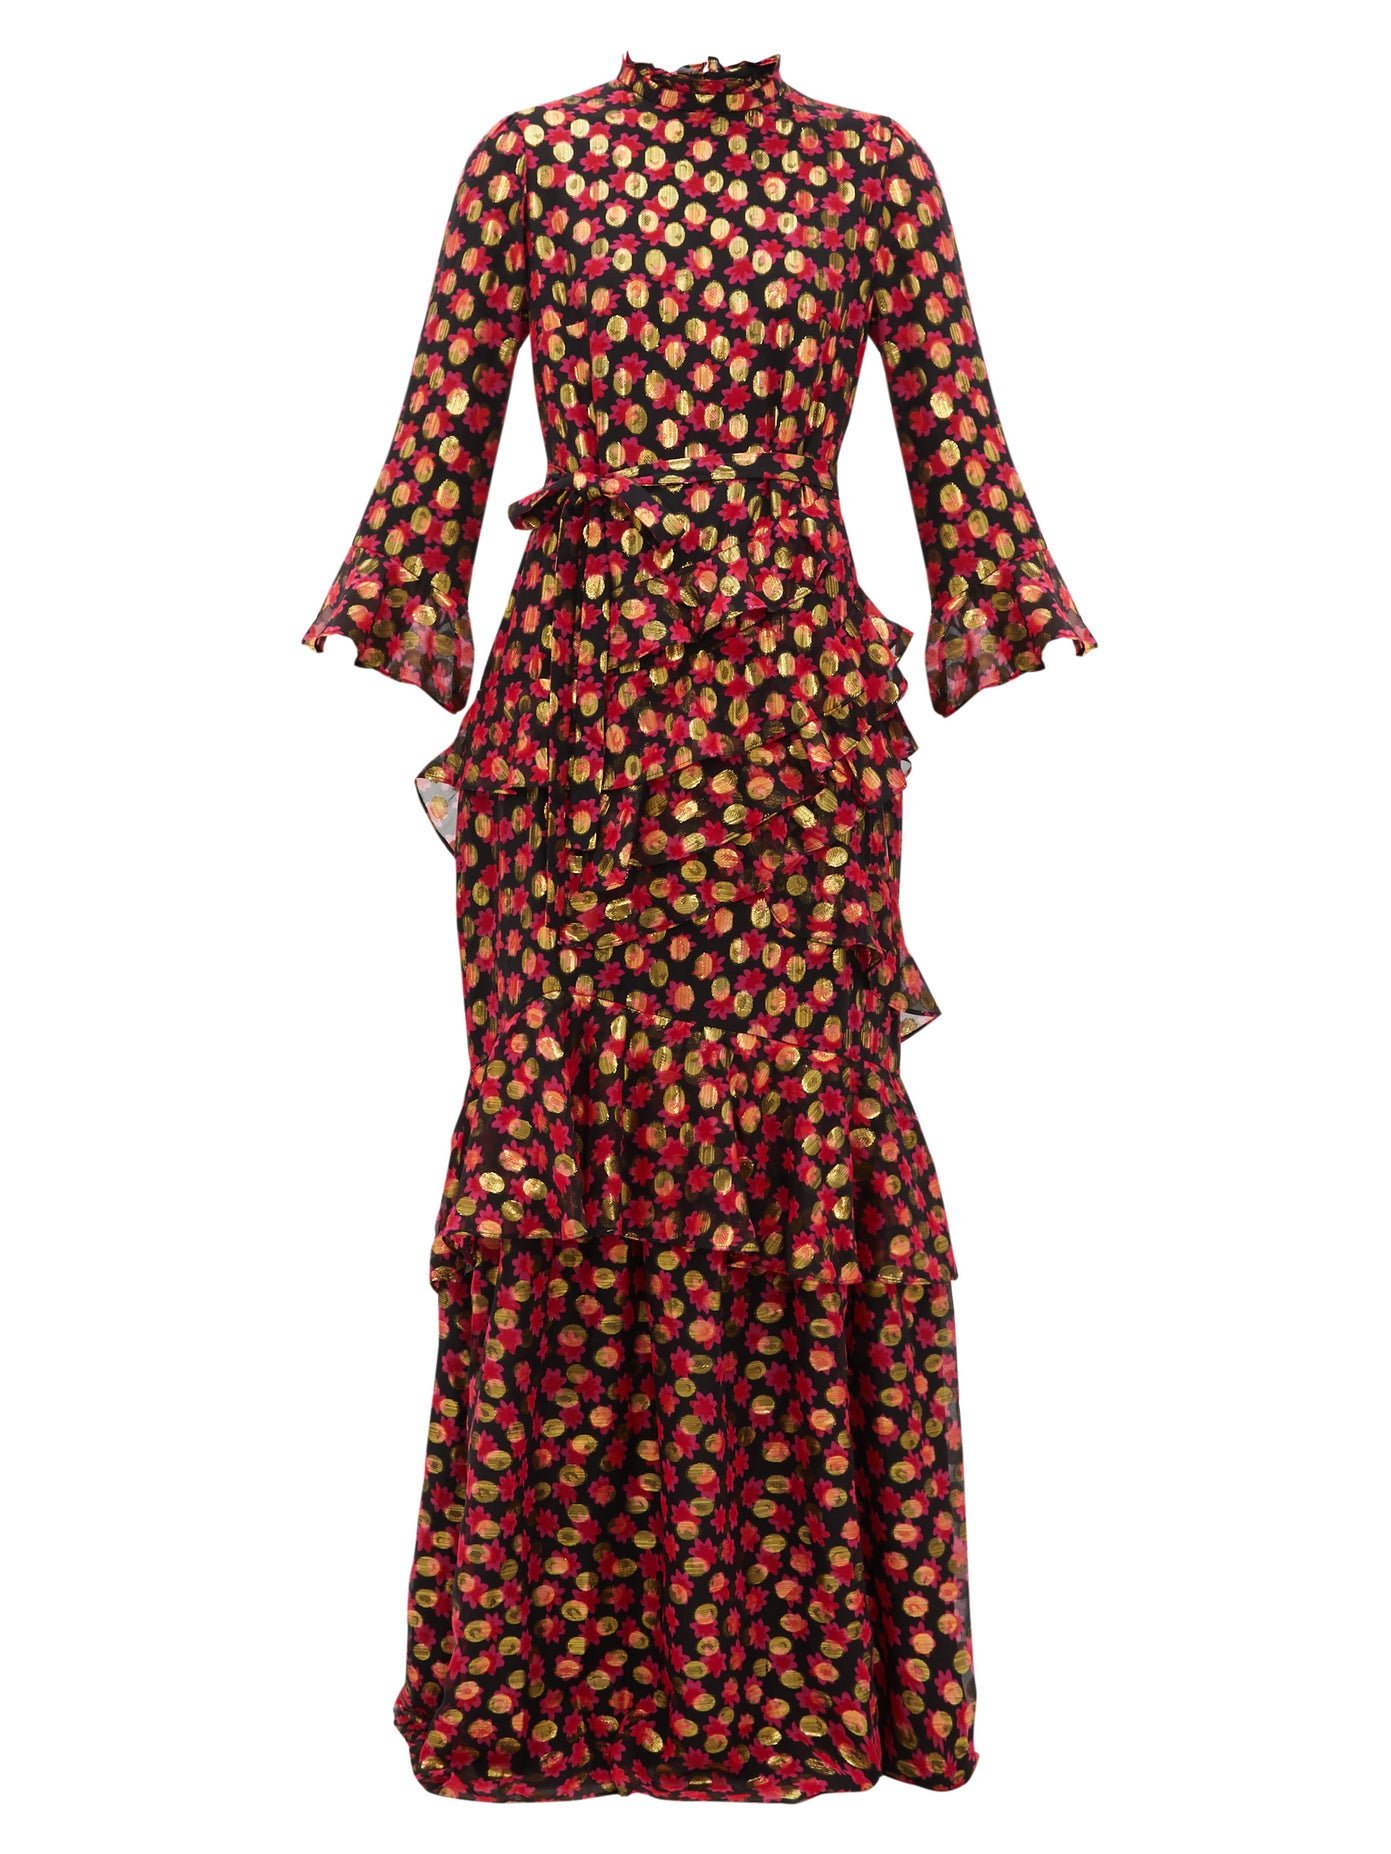 Marissa Mini C Dress in Fuchsia Cross Stitch print – SALONI